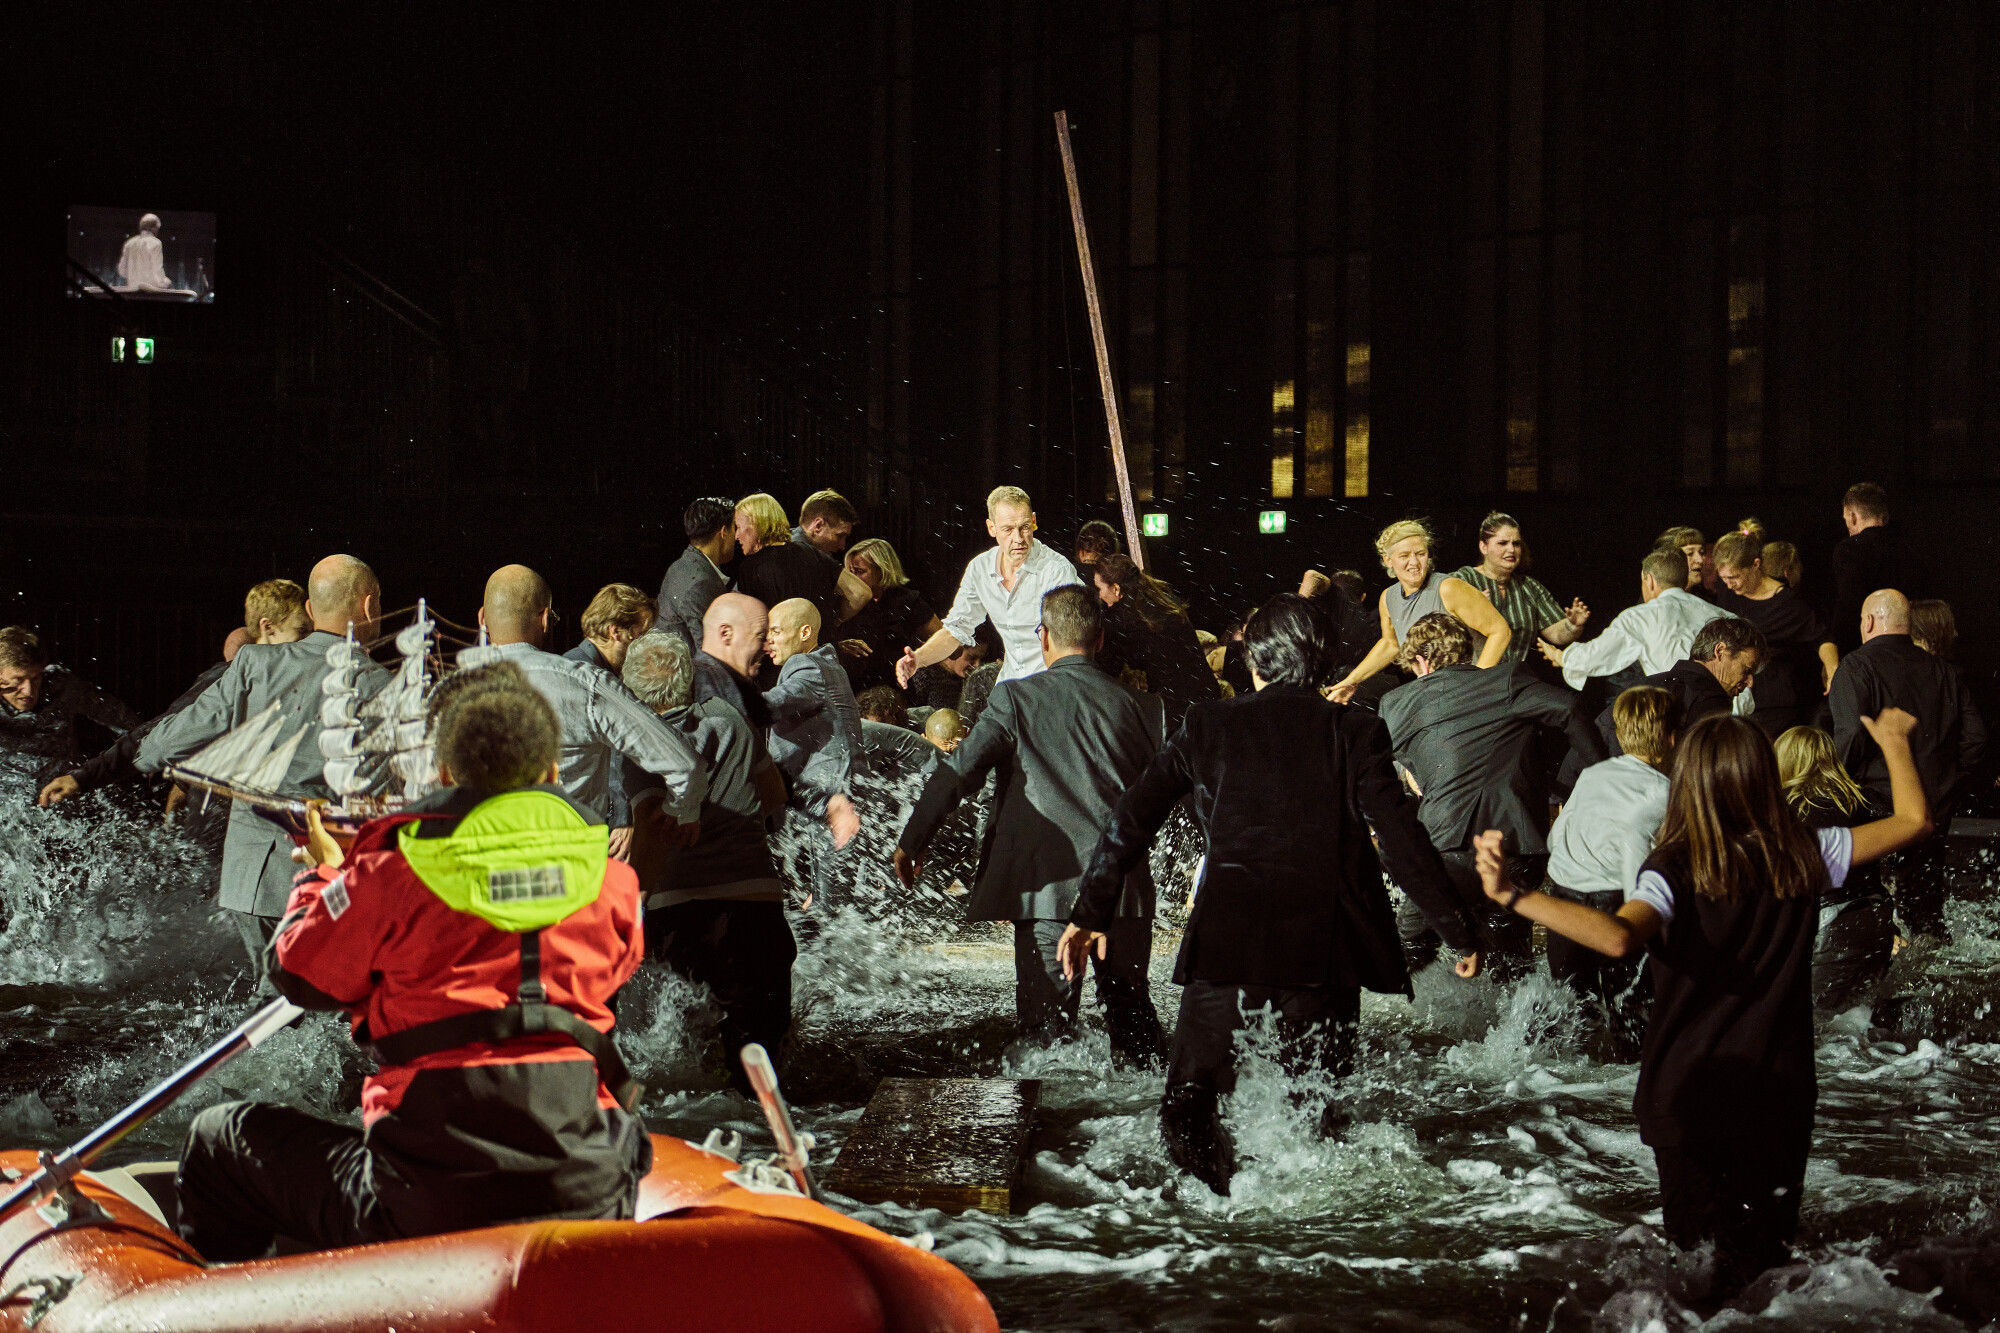 Menschengruppe rettet sich auf ein Floß, im Vordergrund Rettungsbot mit Sanitäterin